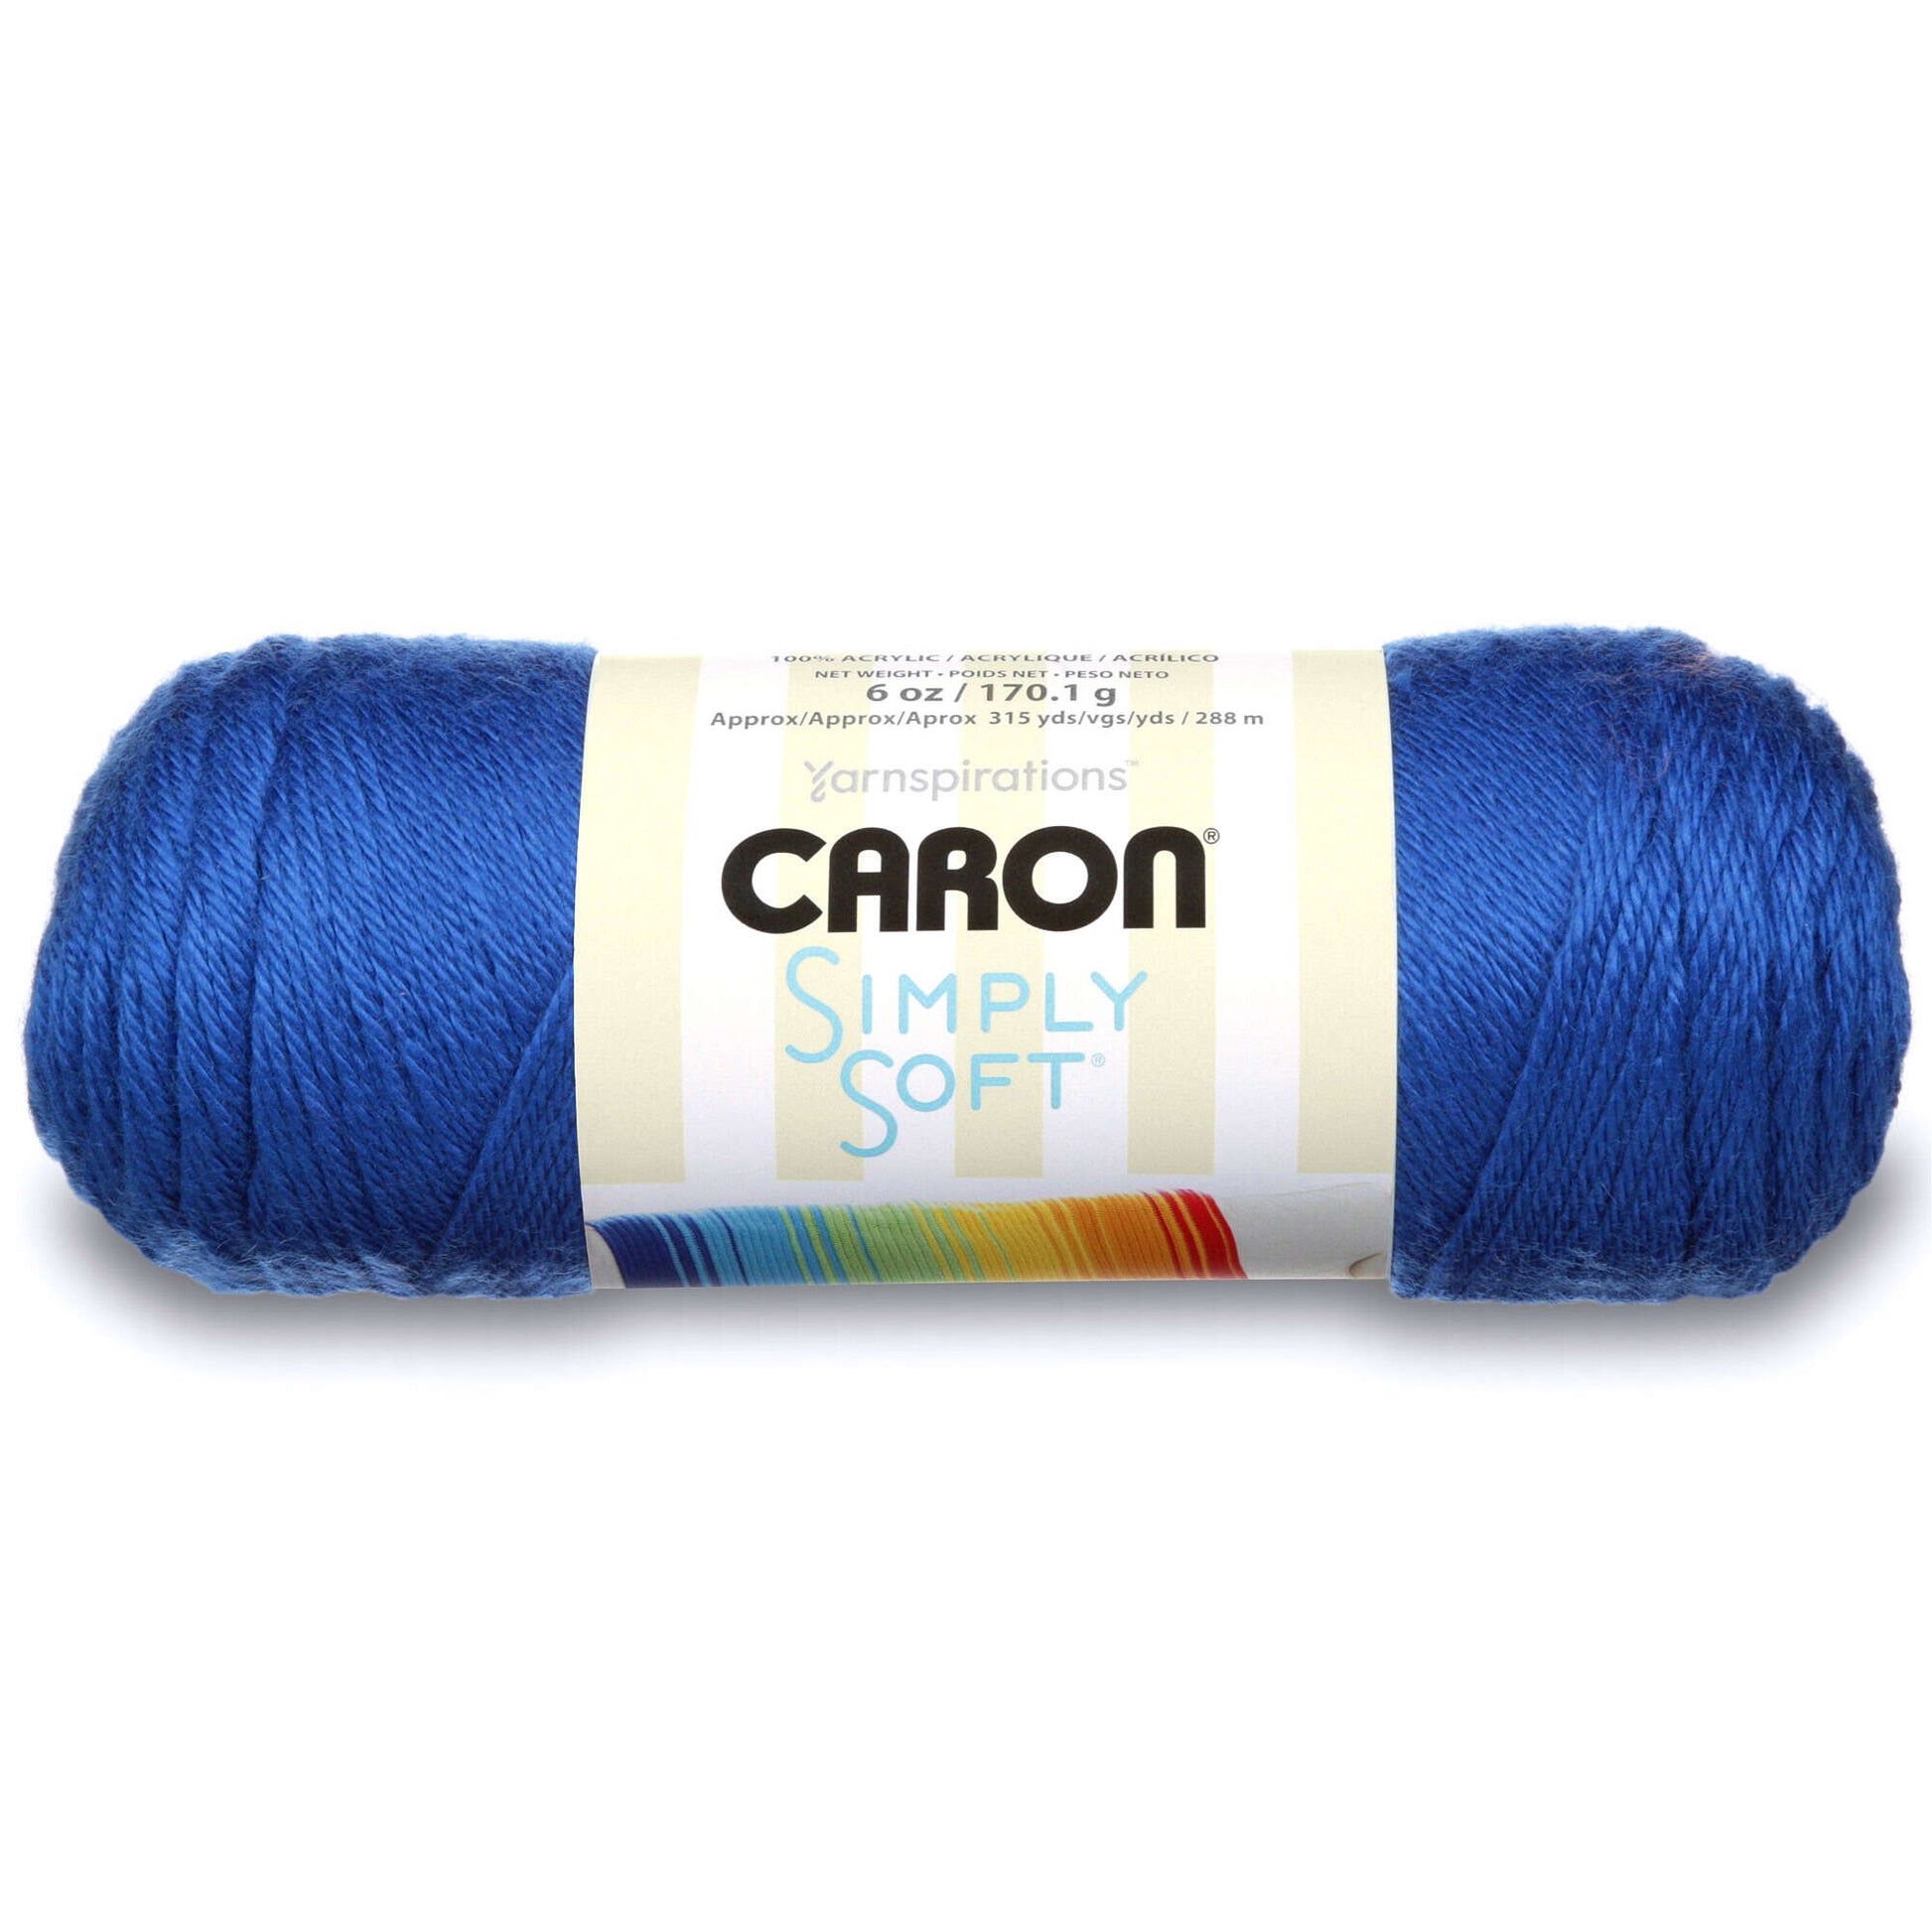 Lion Brand 24/7 Cotton Yarn Medium Weight #4 - Denim Blue Color - 1 Skein